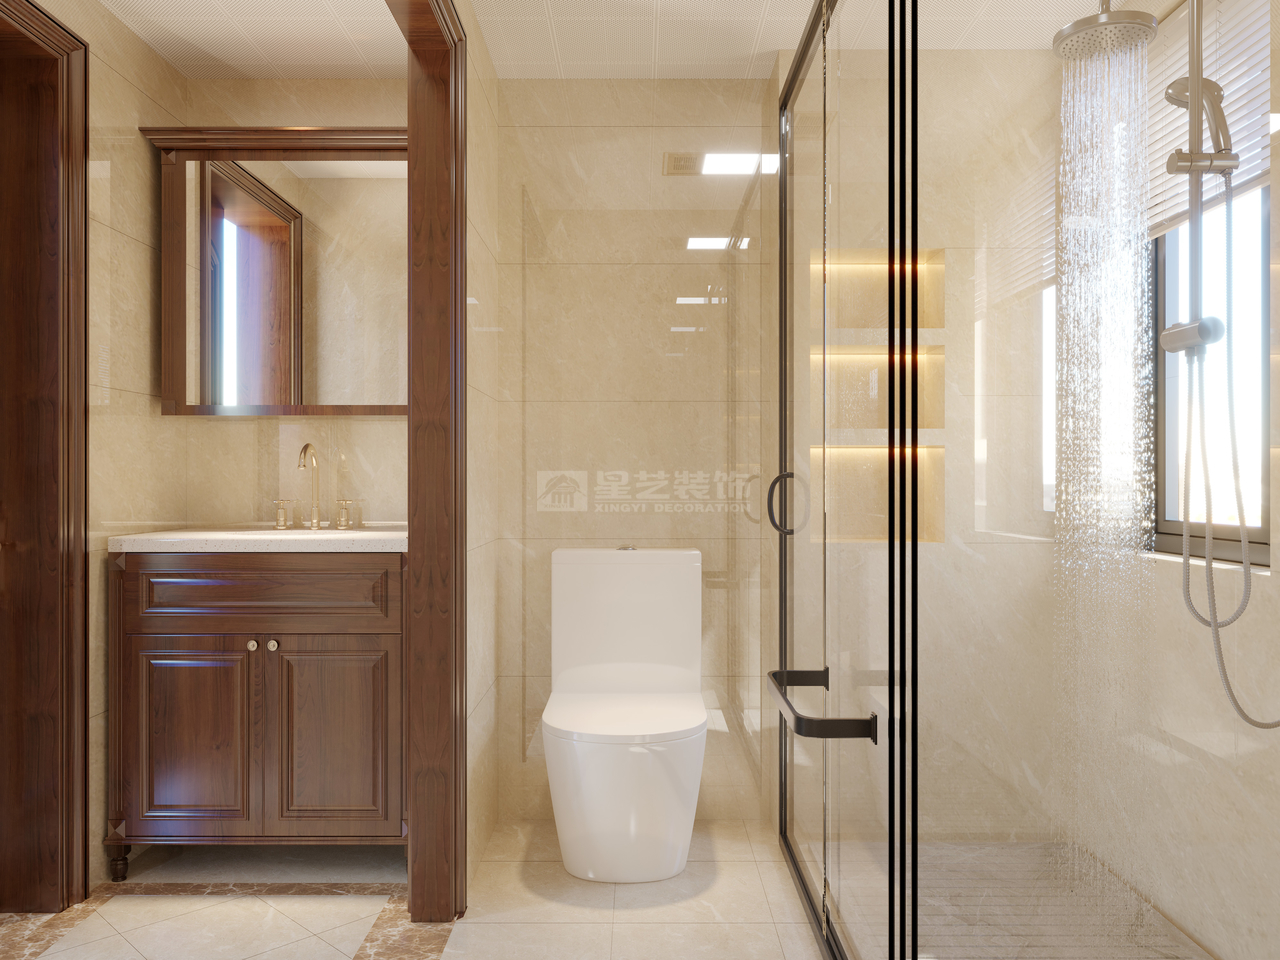 经典的暖色调彰显浴室的简洁、大方

现代的线条辅以明亮的光线，简约干净

原木家具烘托空间的自然气息，简单大气